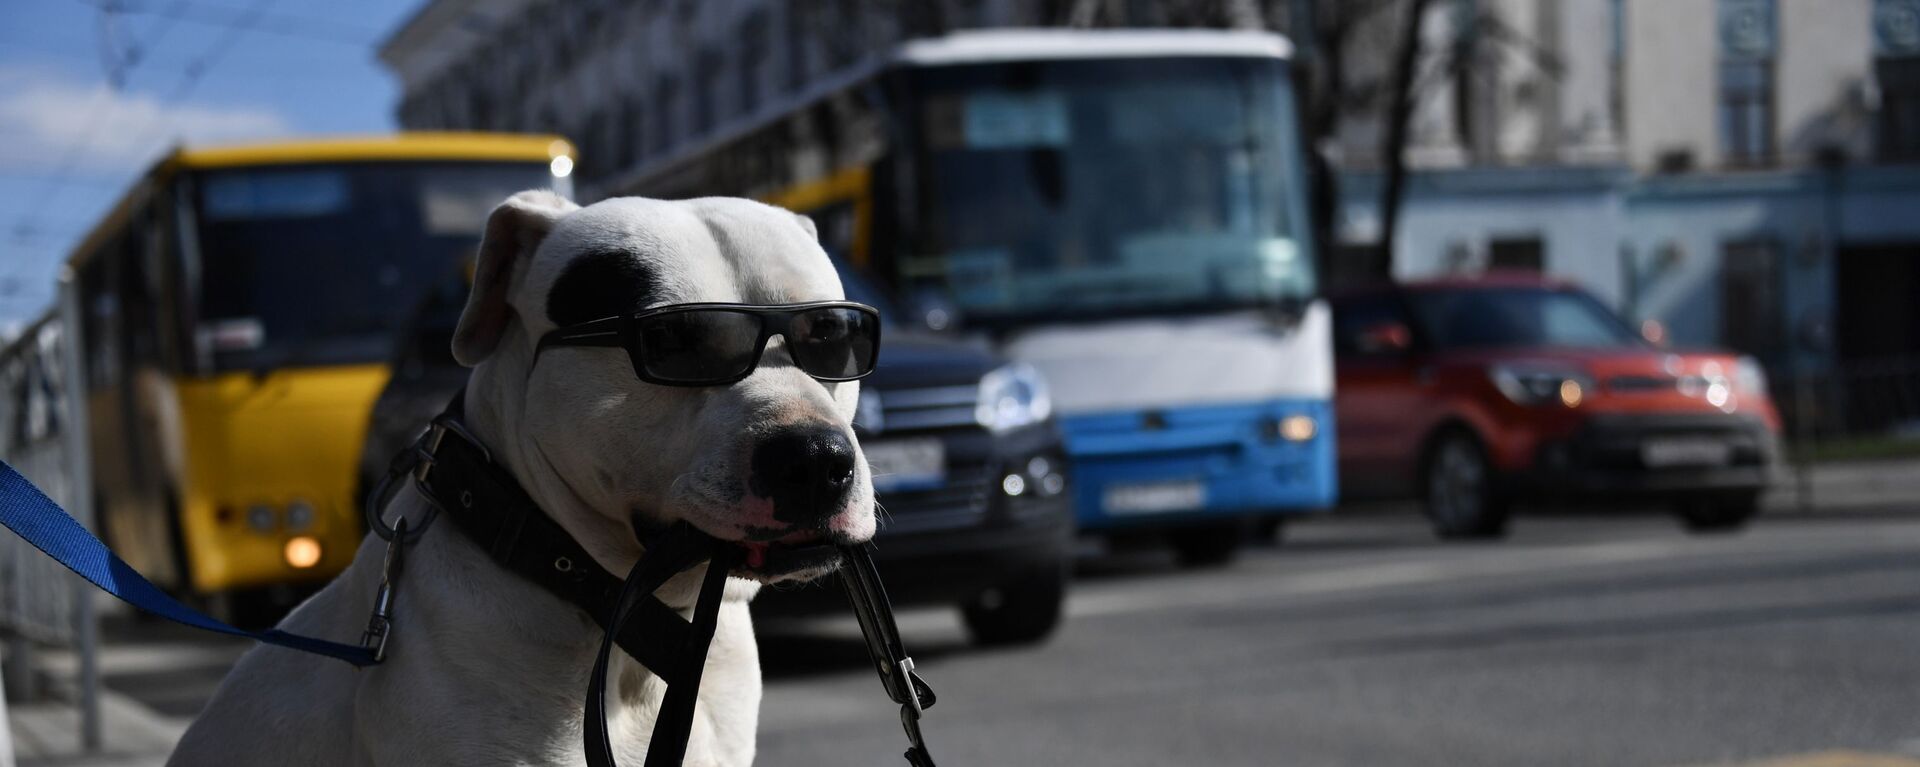 Собака в солнечных очках держит сумку в зубах у пешеходного перехода в Симферополе - Sputnik Молдова, 1920, 29.06.2021